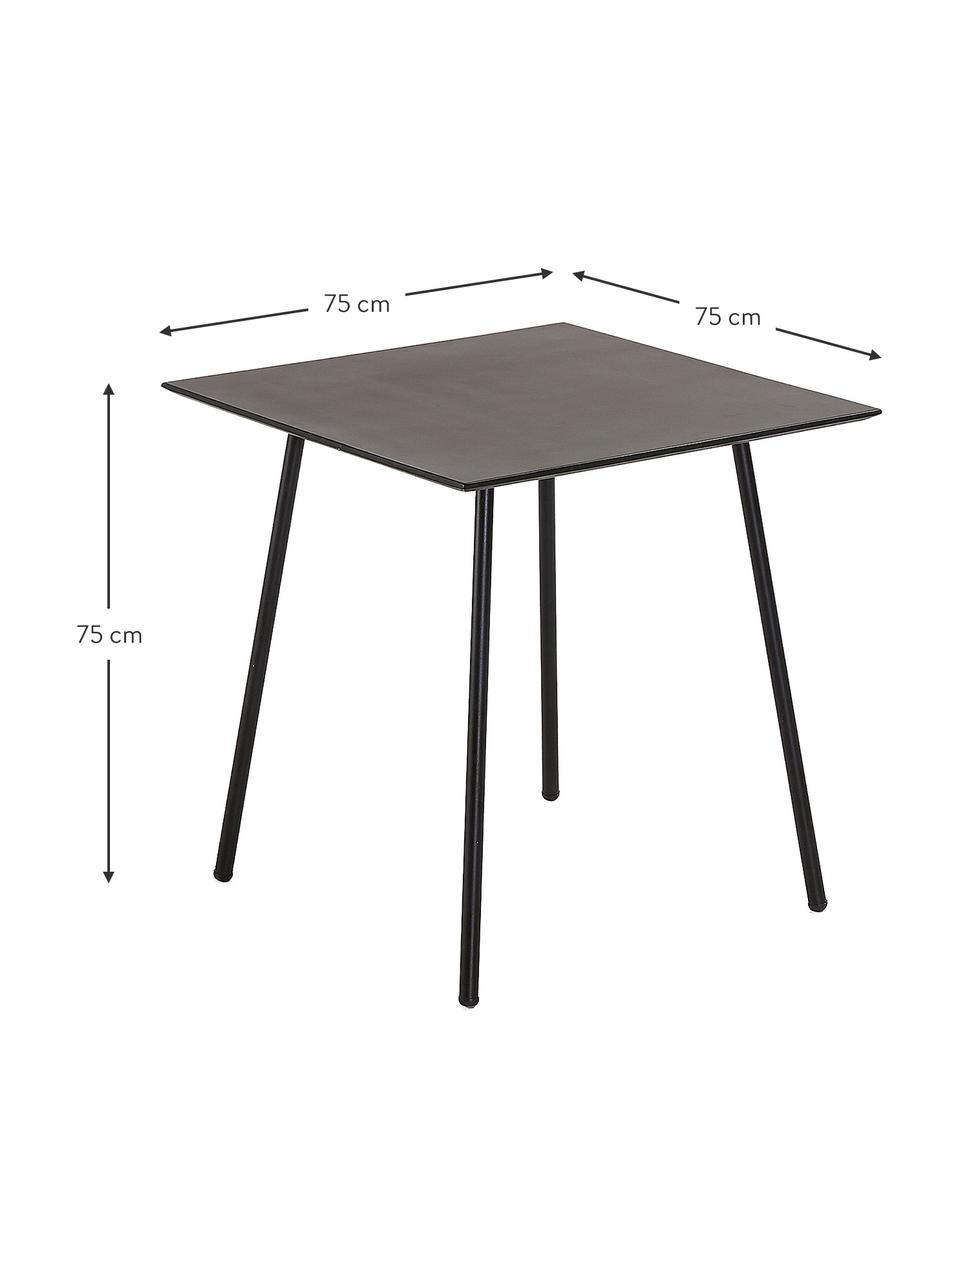 Quadratischer Esstisch Mathis in Grau, 75 x 75 cm, Tischplatte: Verzinkte Stahl- und Zeme, Beine: Metall, Pulverbeschichtet, Schwarz, 75 x 75 cm